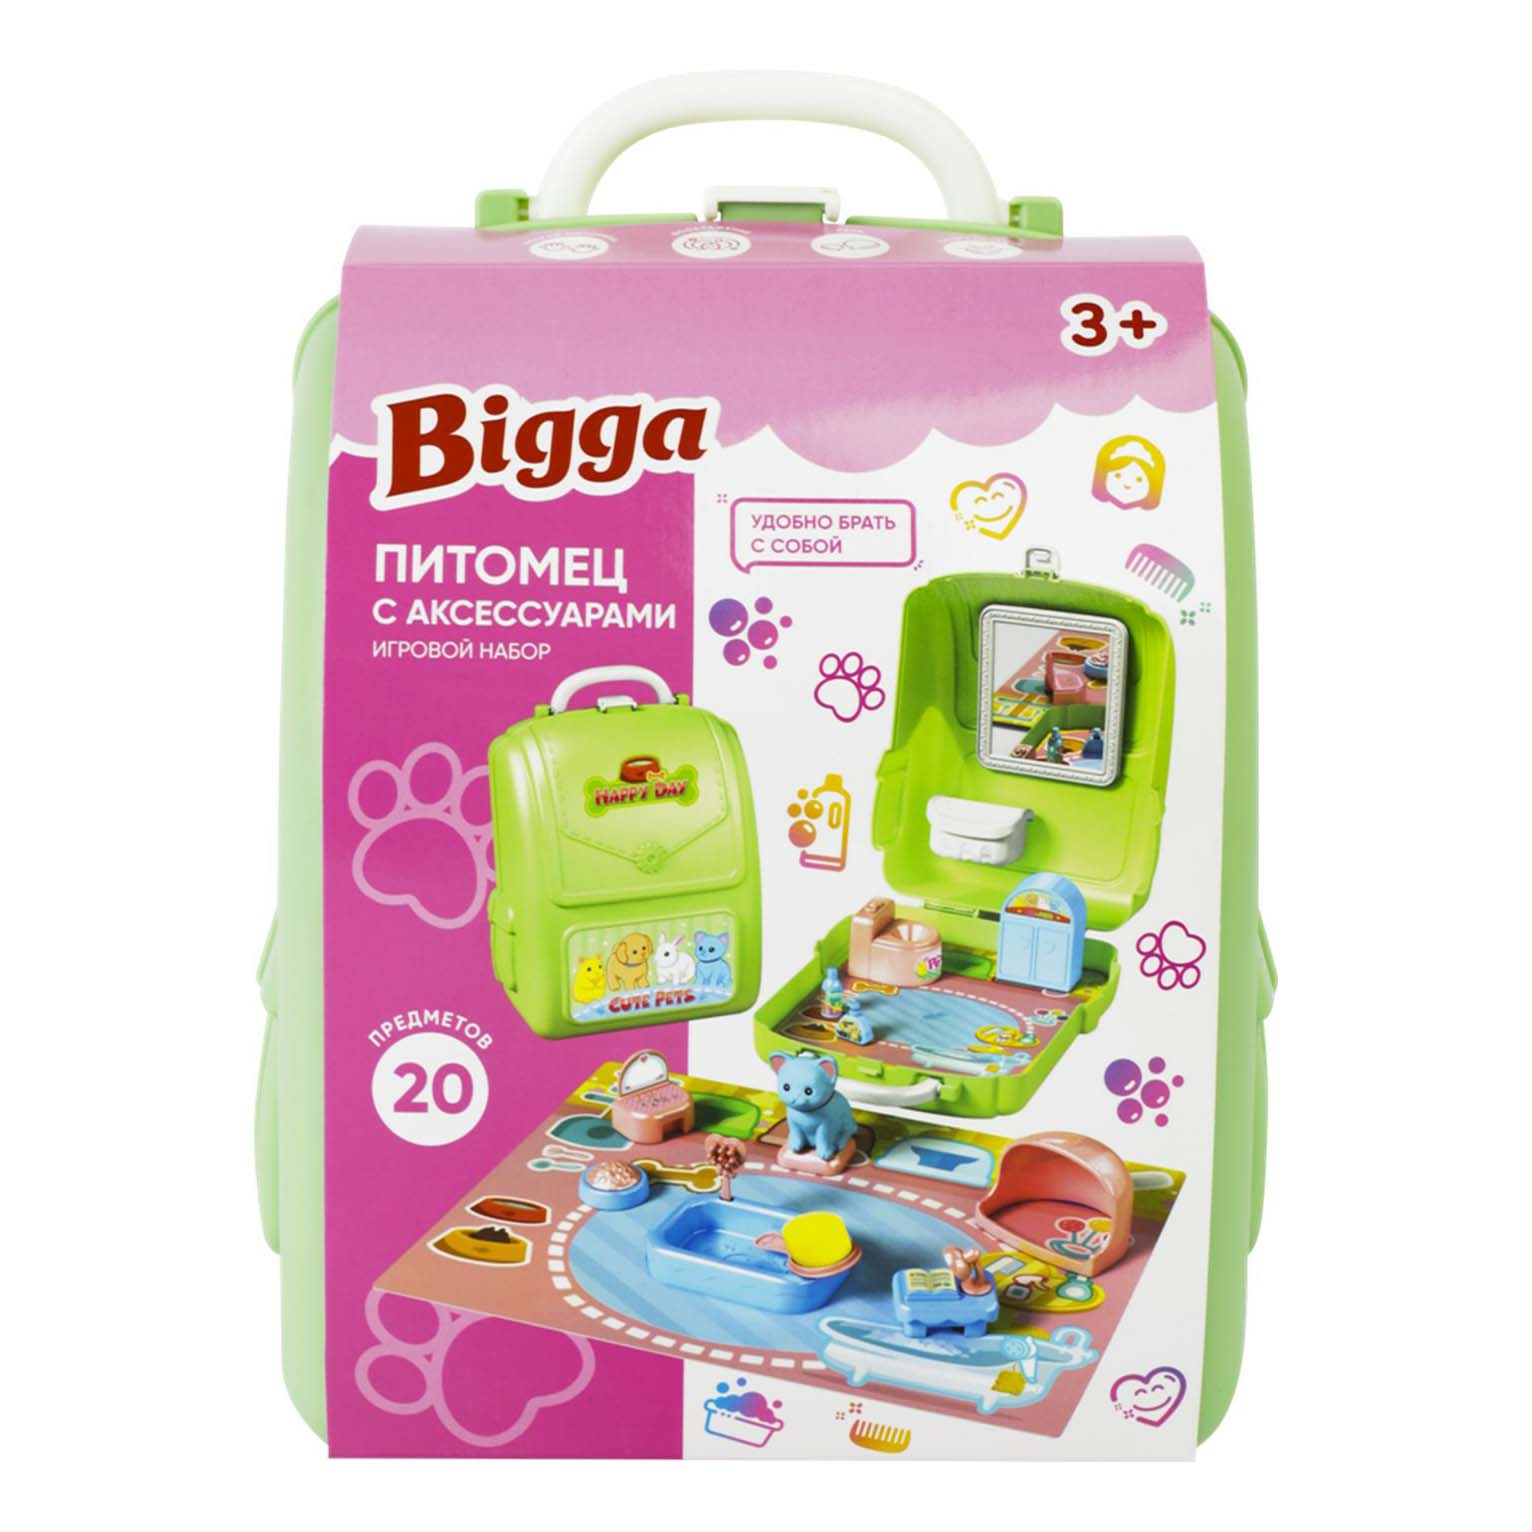 Игровой набор Bigga Питомец с аксессуарами в рюкзаке